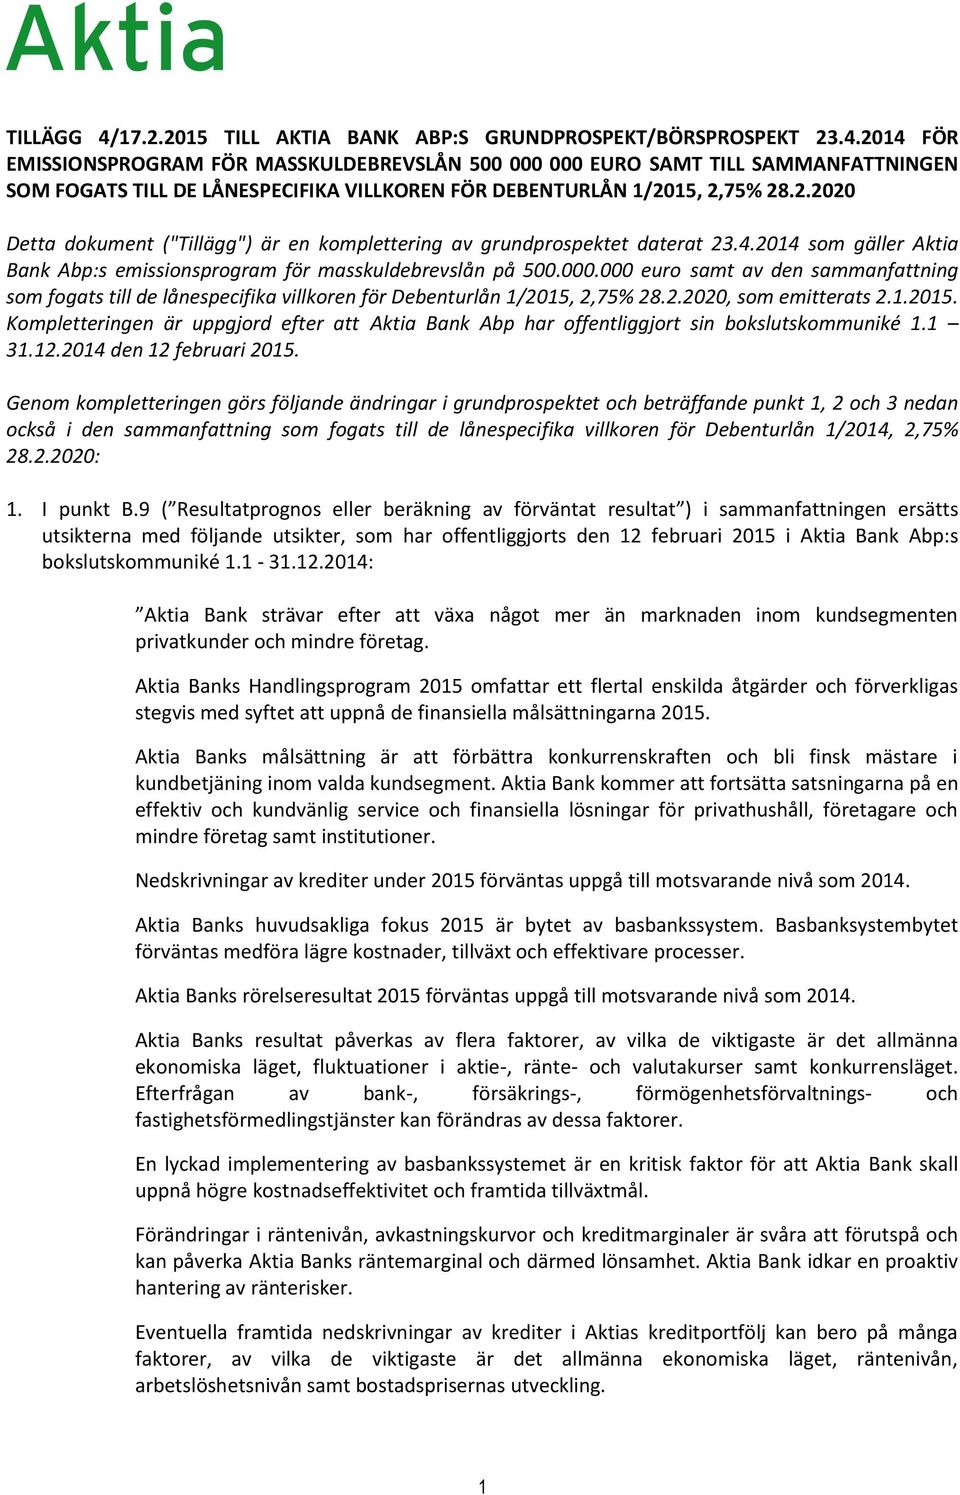 000 euro samt av den sammanfattning som fogats till de lånespecifika villkoren för Debenturlån 1/2015, 2,75% 28.2.2020, som emitterats 2.1.2015. Kompletteringen är uppgjord efter att Aktia Bank Abp har offentliggjort sin bokslutskommuniké 1.